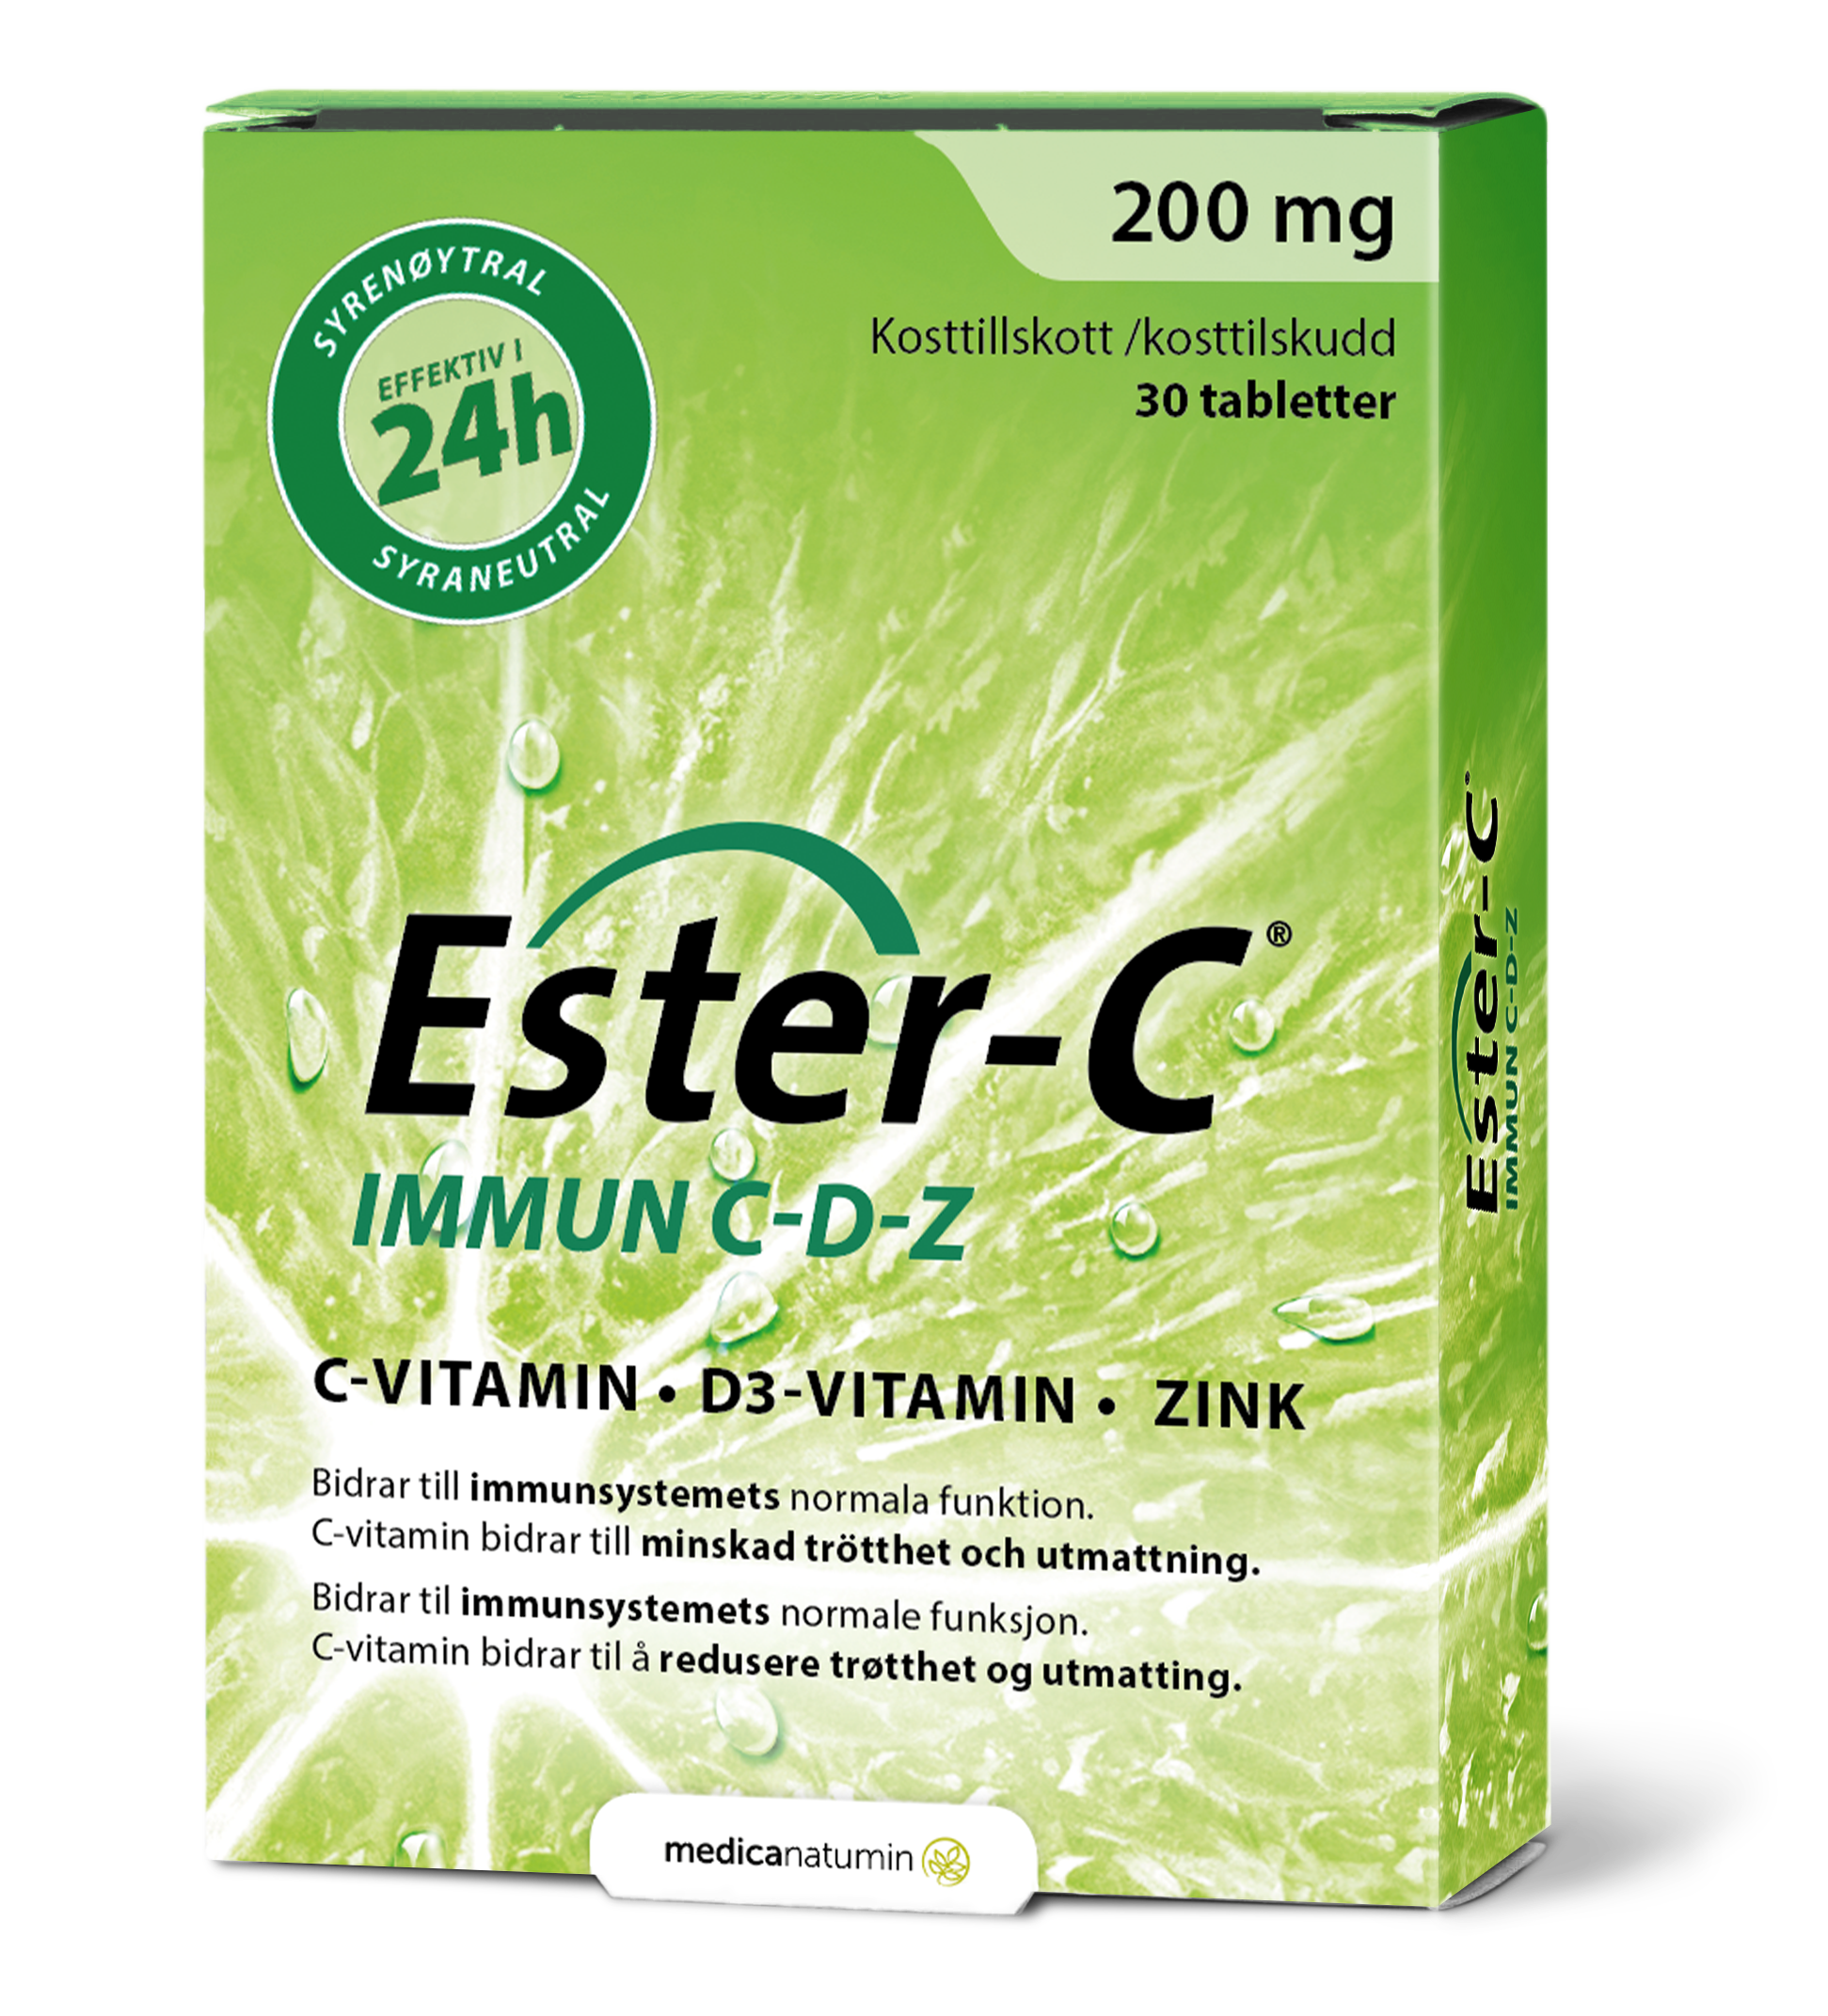 Ester-C Immun